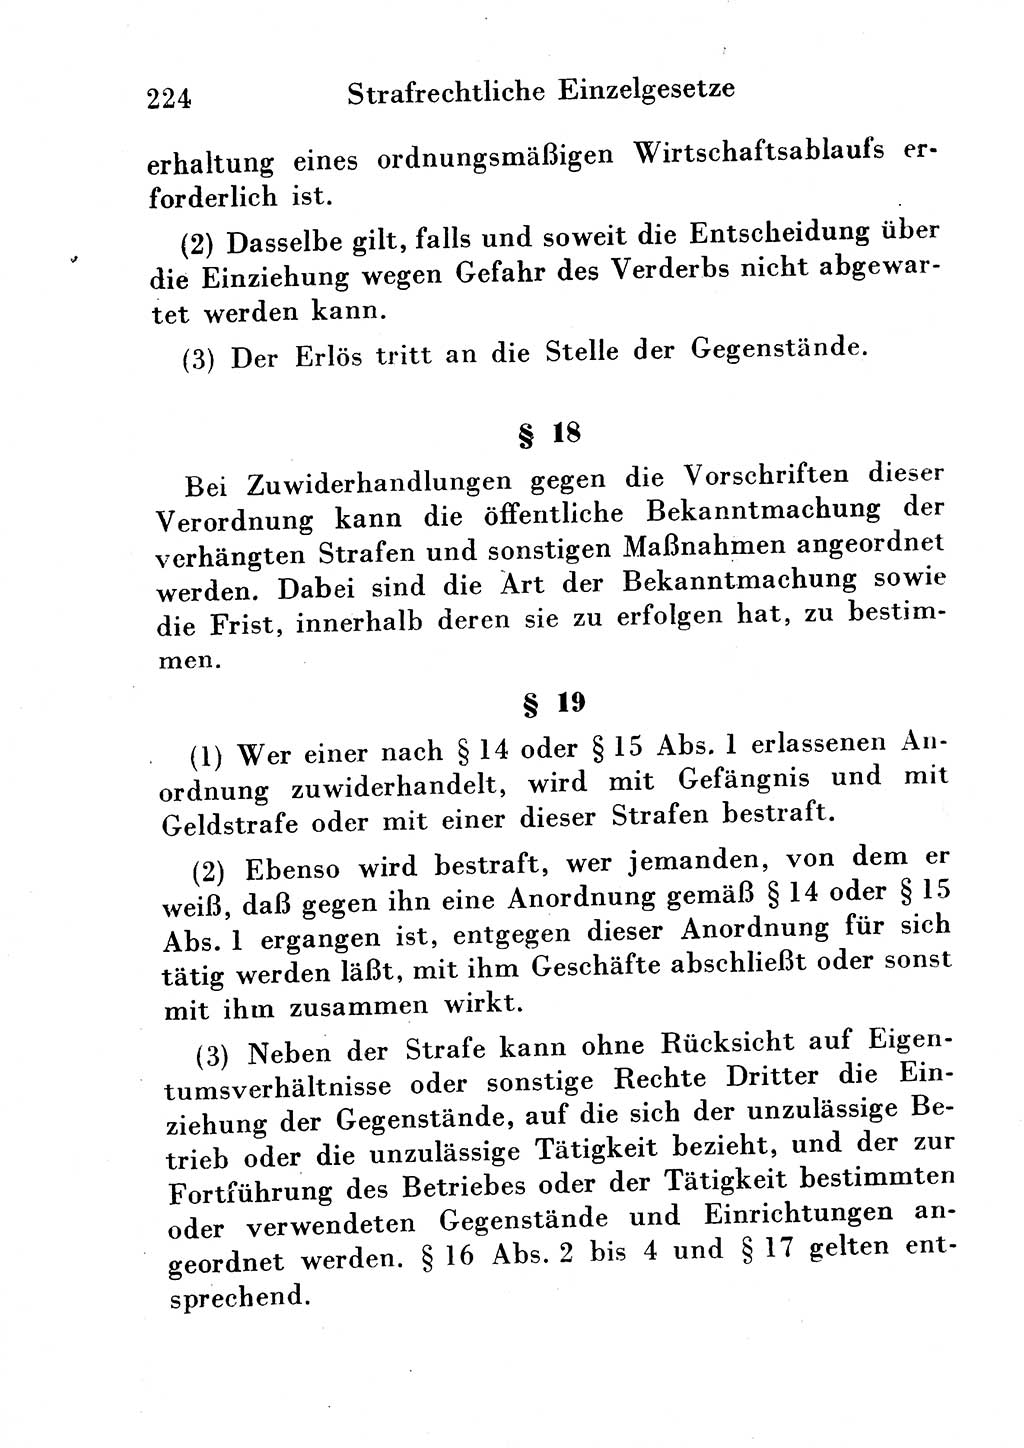 Strafgesetzbuch (StGB) und andere Strafgesetze [Deutsche Demokratische Republik (DDR)] 1954, Seite 224 (StGB Strafges. DDR 1954, S. 224)